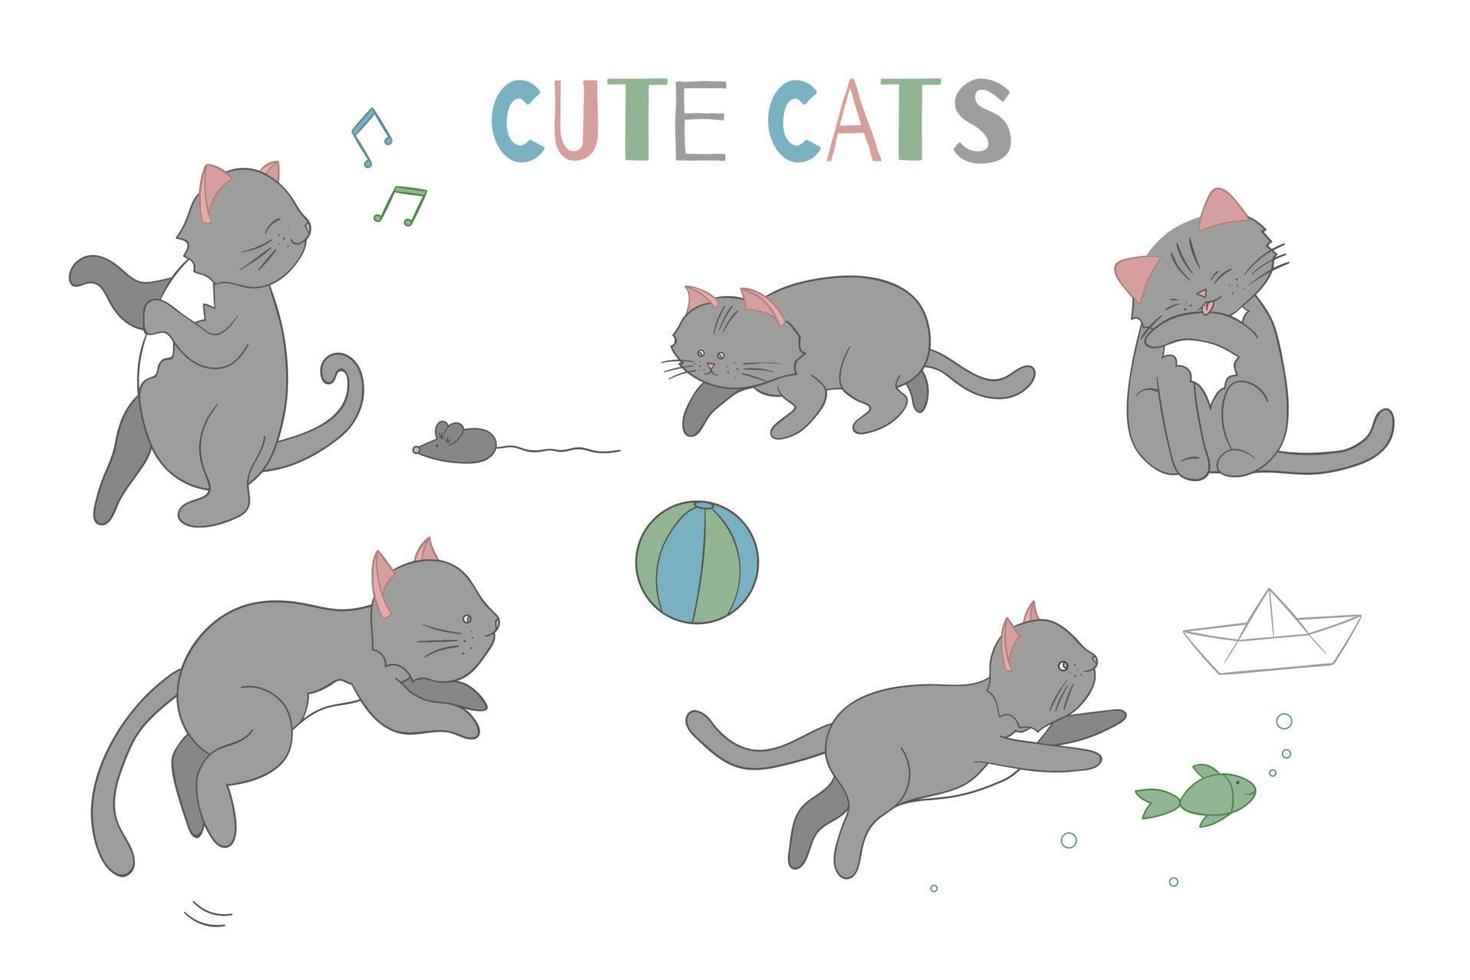 vector set schattige cartoon stijl kat in verschillende poses. dierlijke karakterillustratie voor kinderen. handgetekende lijntekeningen van grappige kitten. grote verzameling huisdieren voor kinderen, kleuren, animatie.